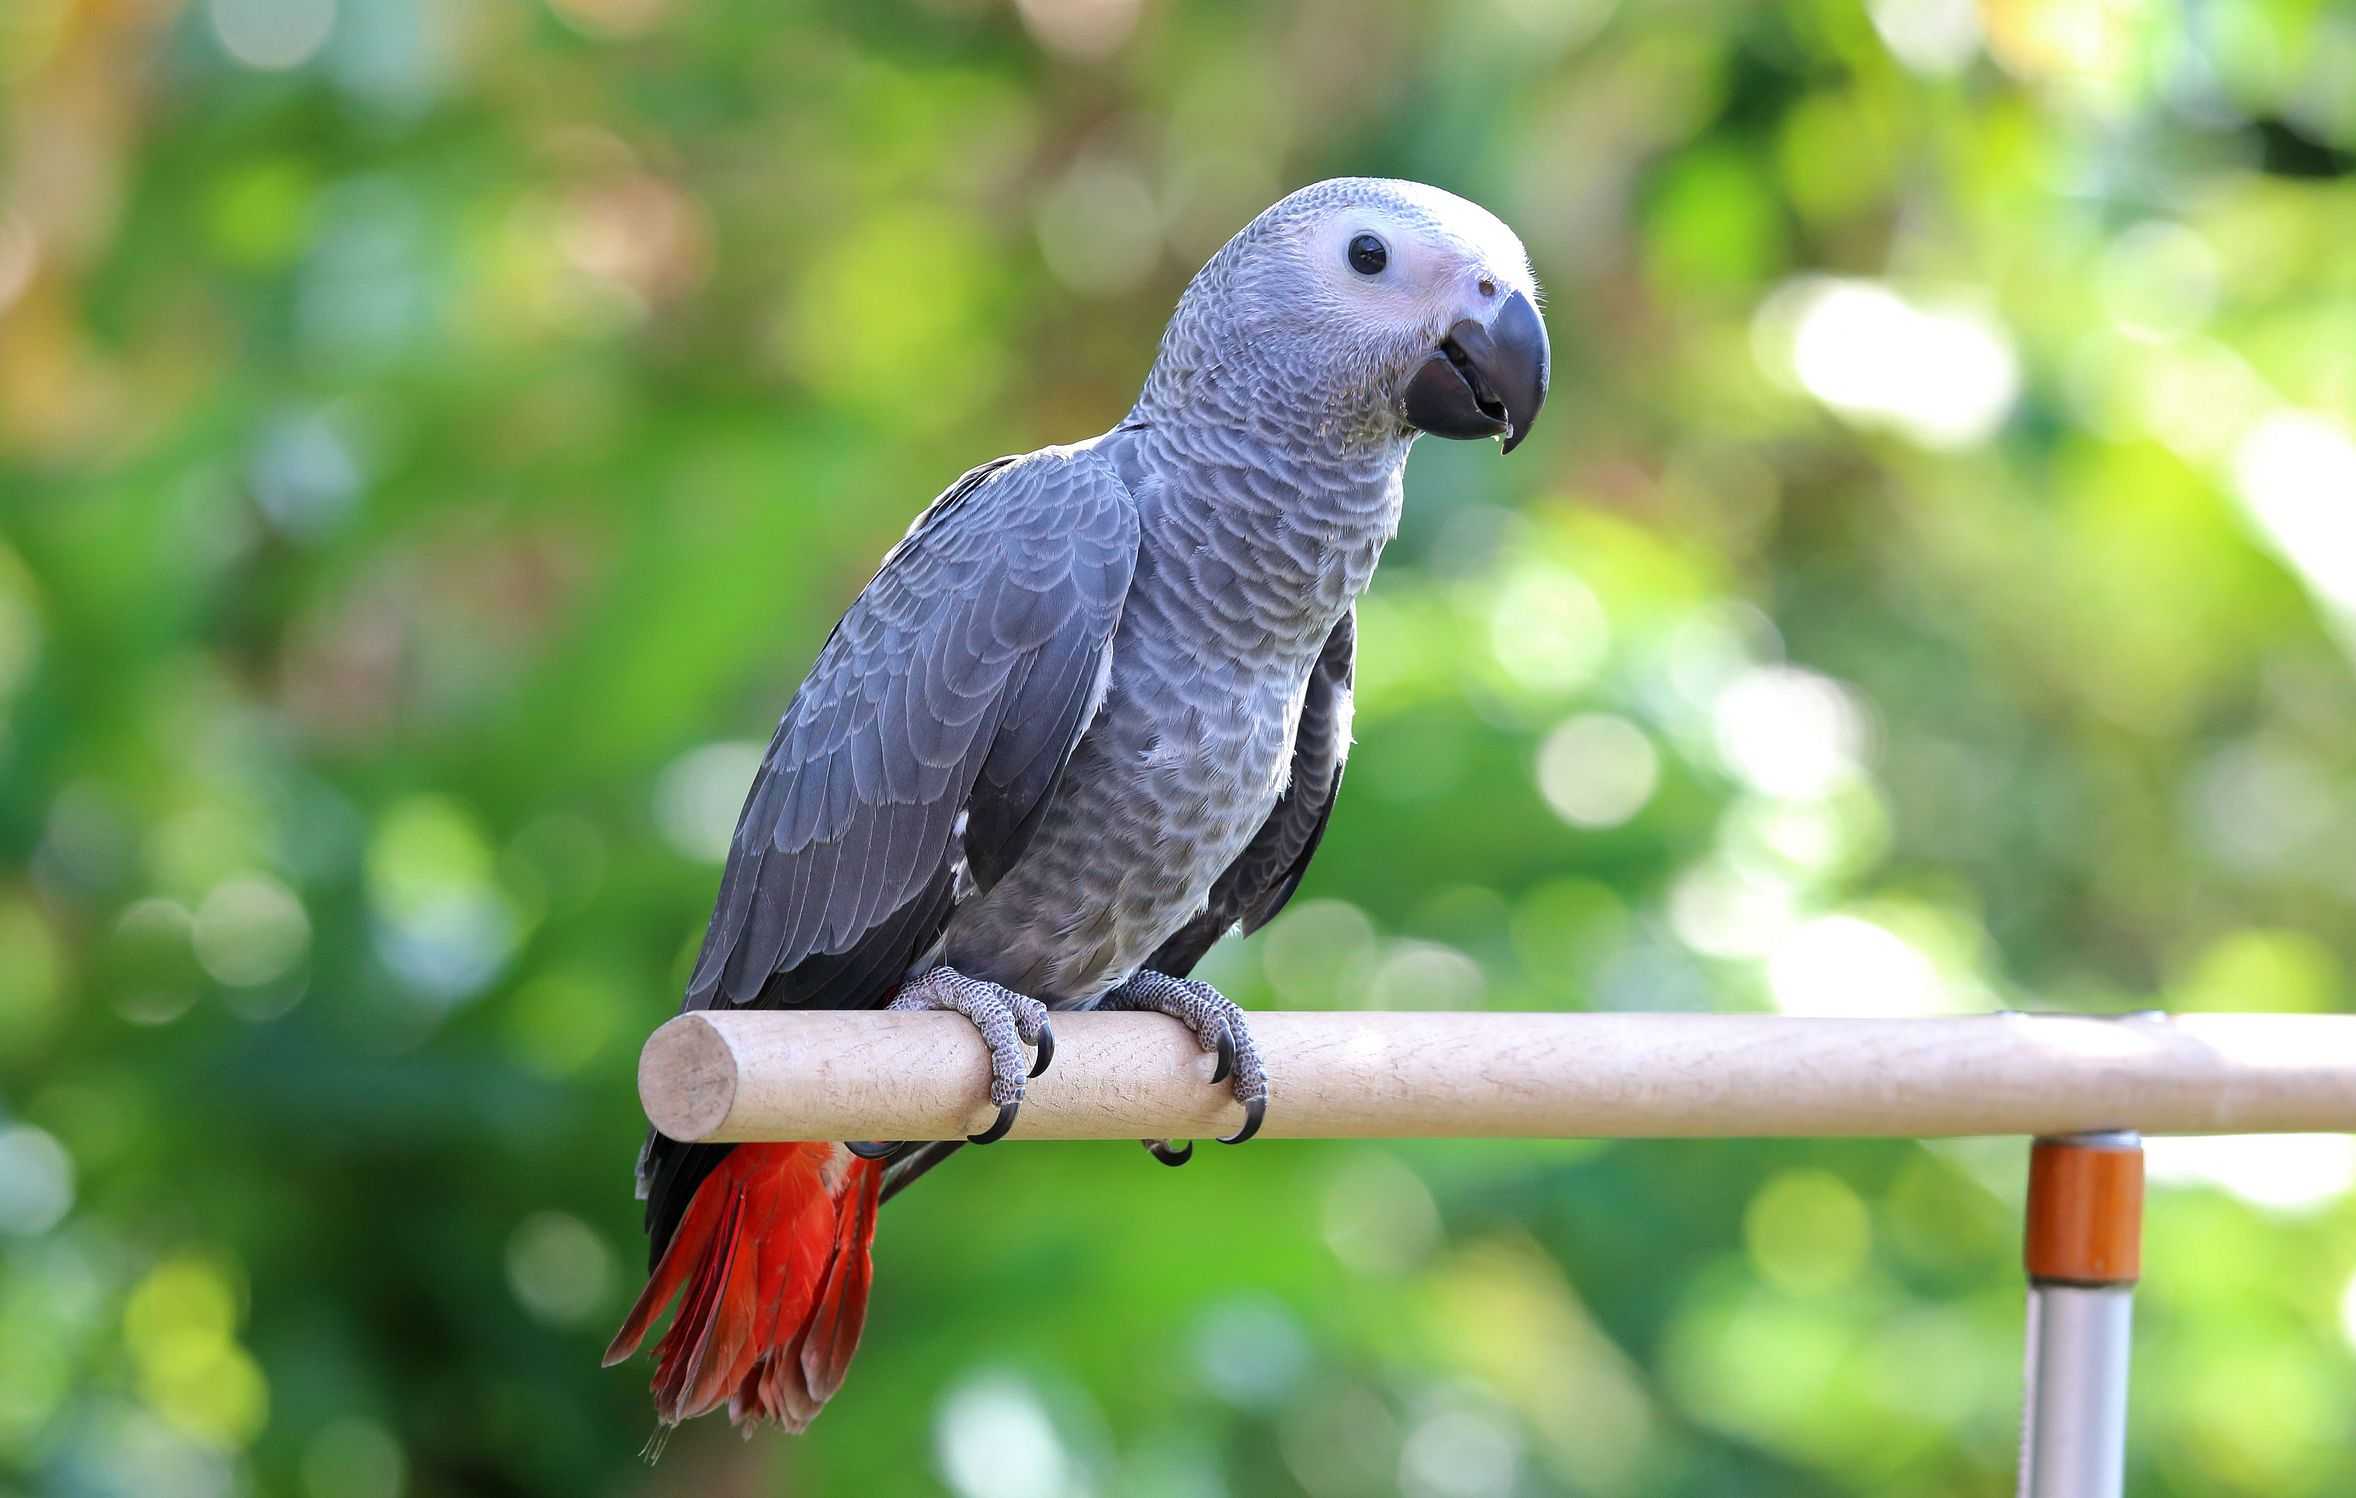 Сколько живут попугаи: в домашних условиях, дикой природе